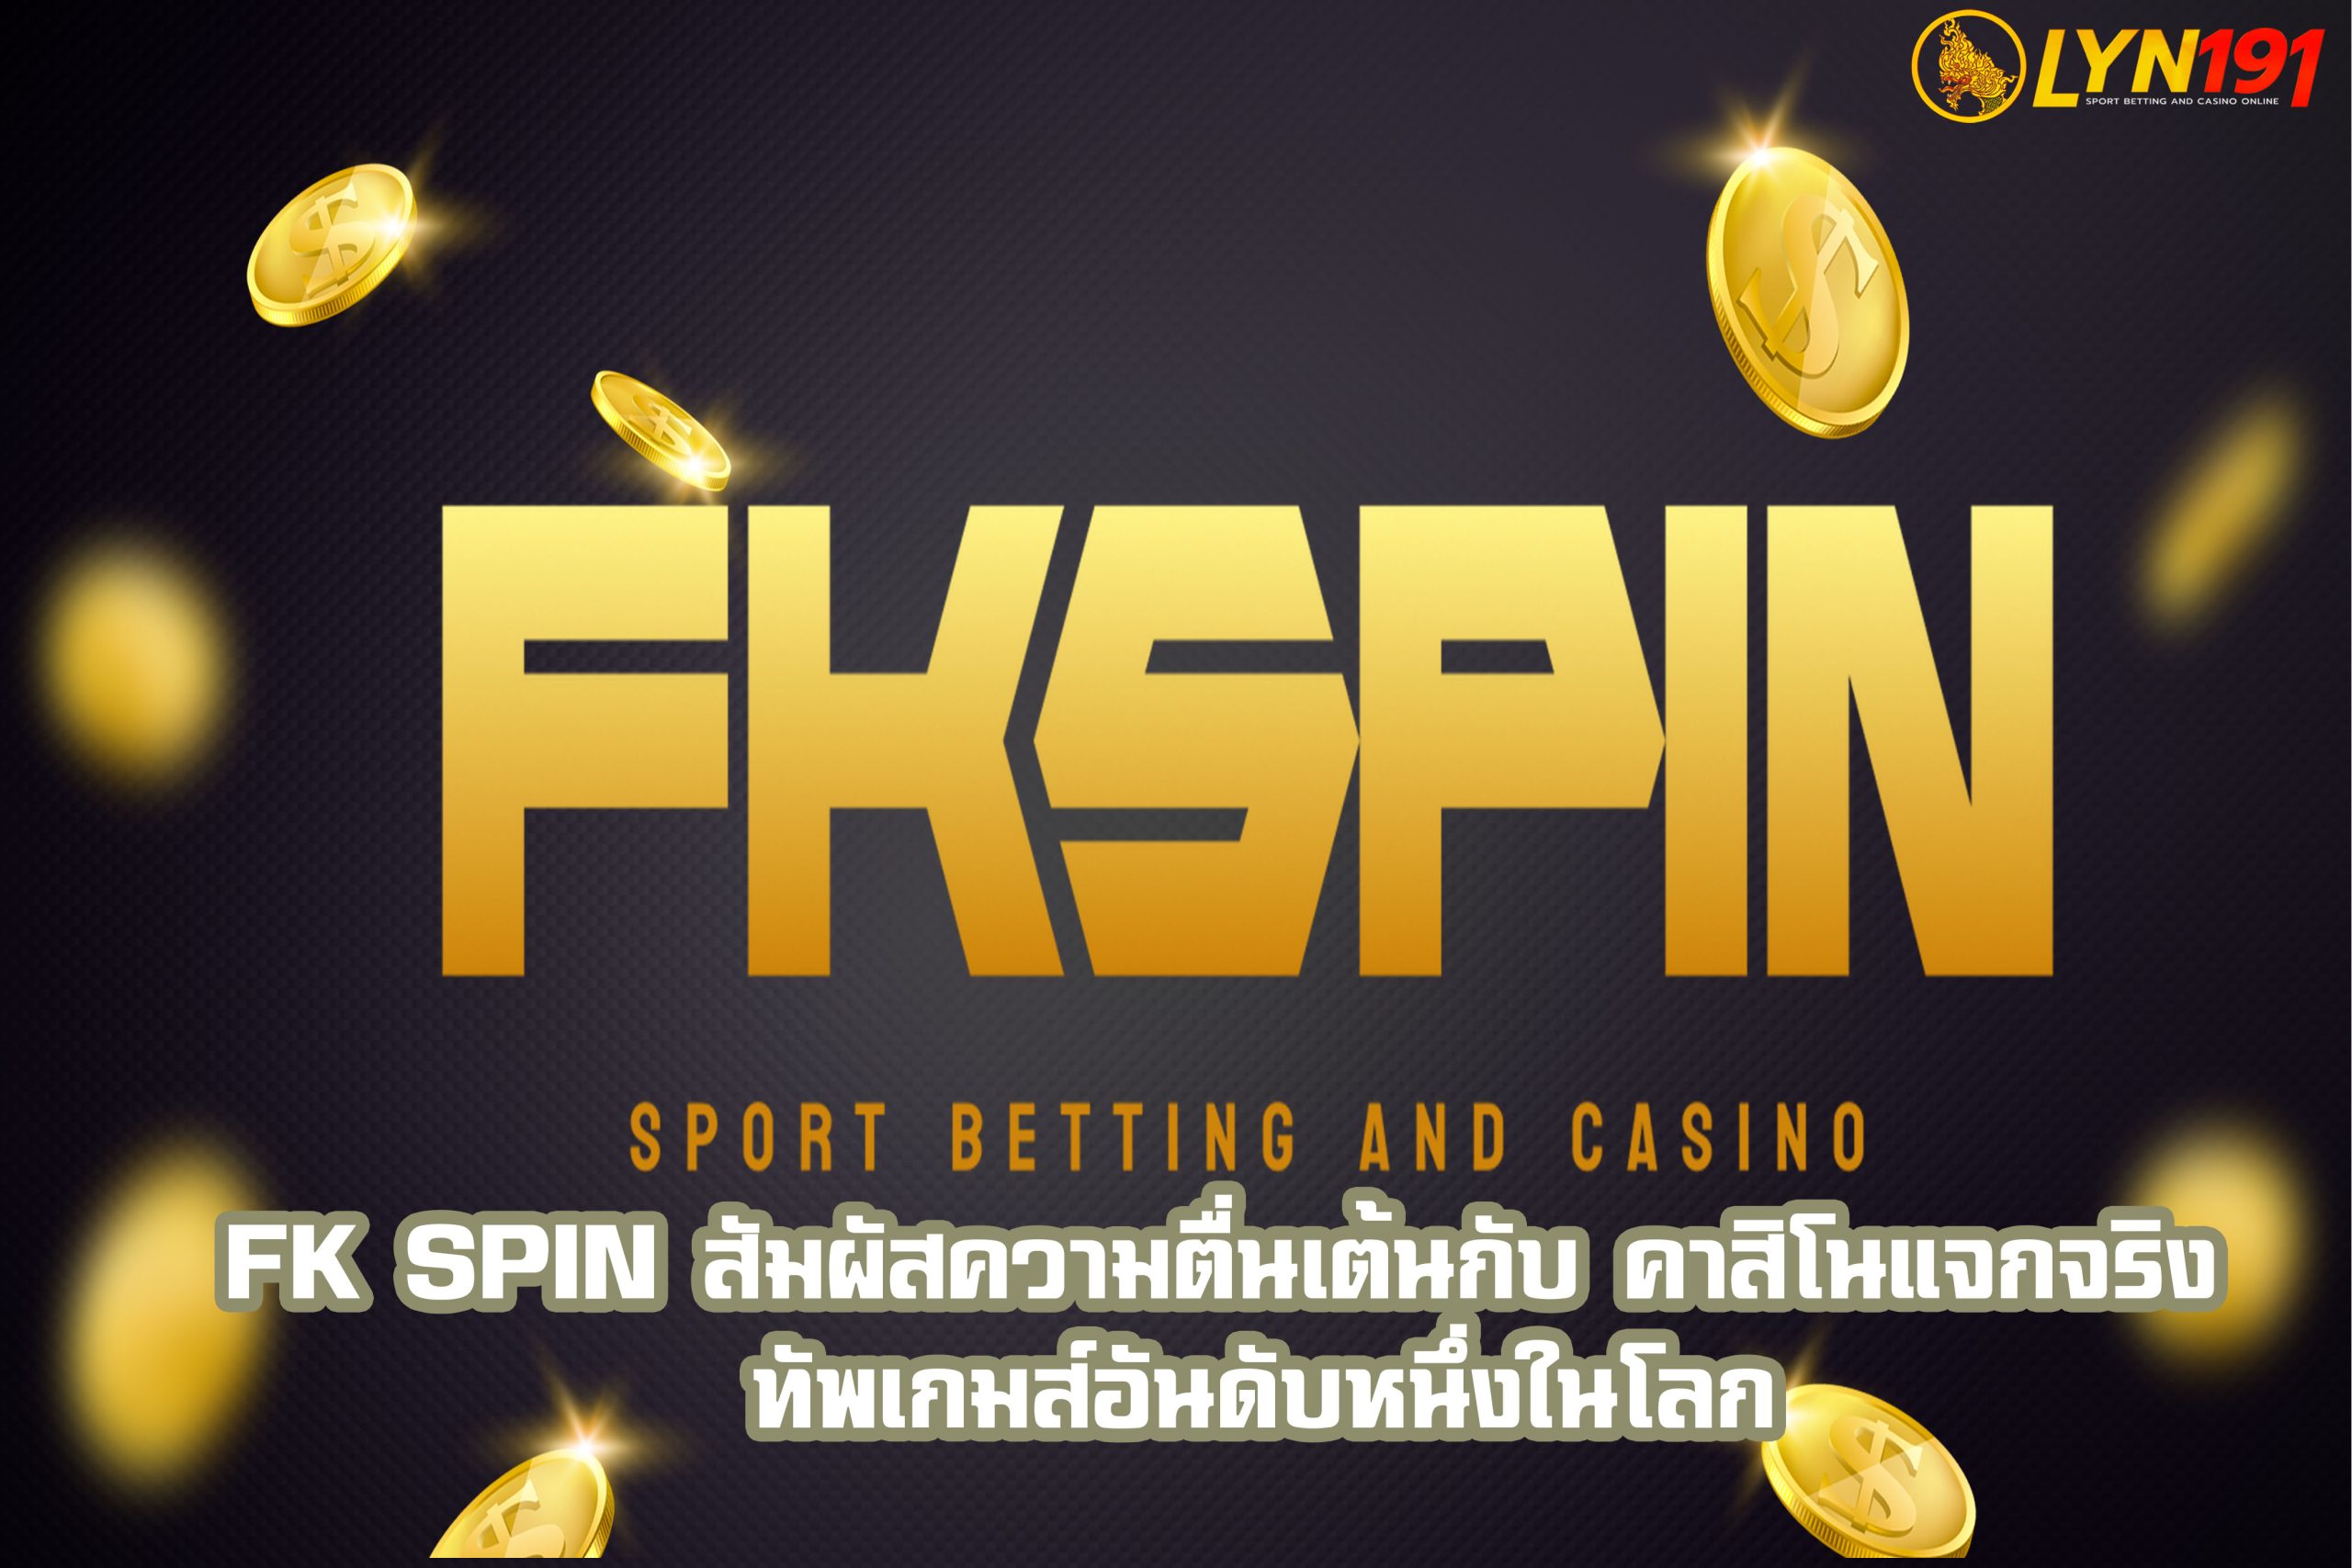 fk spin สัมผัสความตื่นเต้นกับ คาสิโนแจกจริง  ทัพเกมส์อันดับหนึ่งในโลก